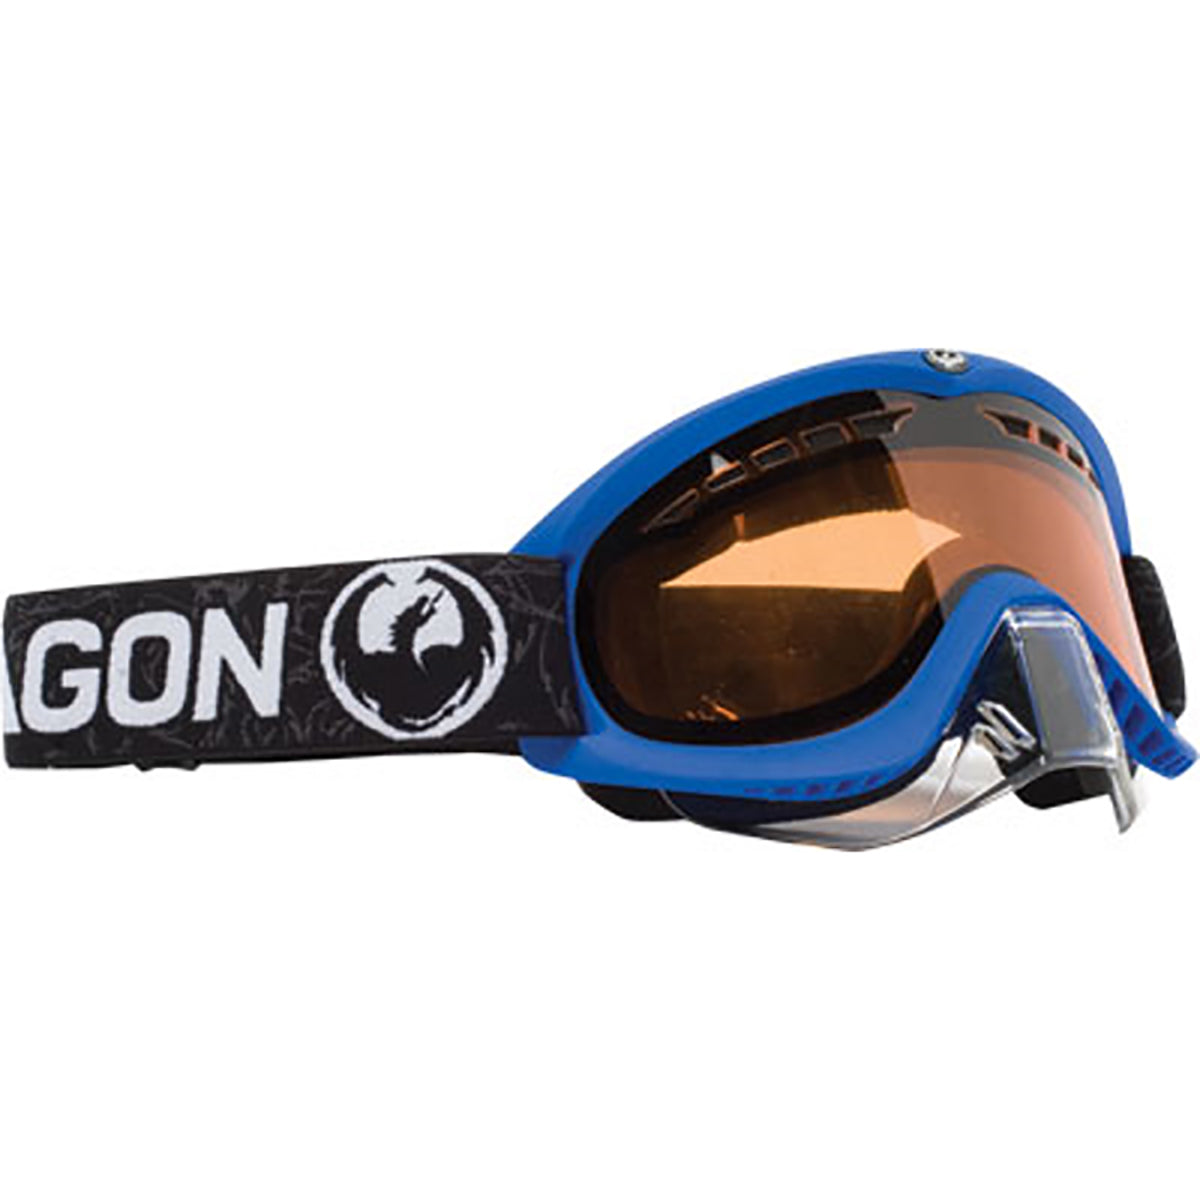 Dragon Alliance Europe, Dragon Snow Goggles